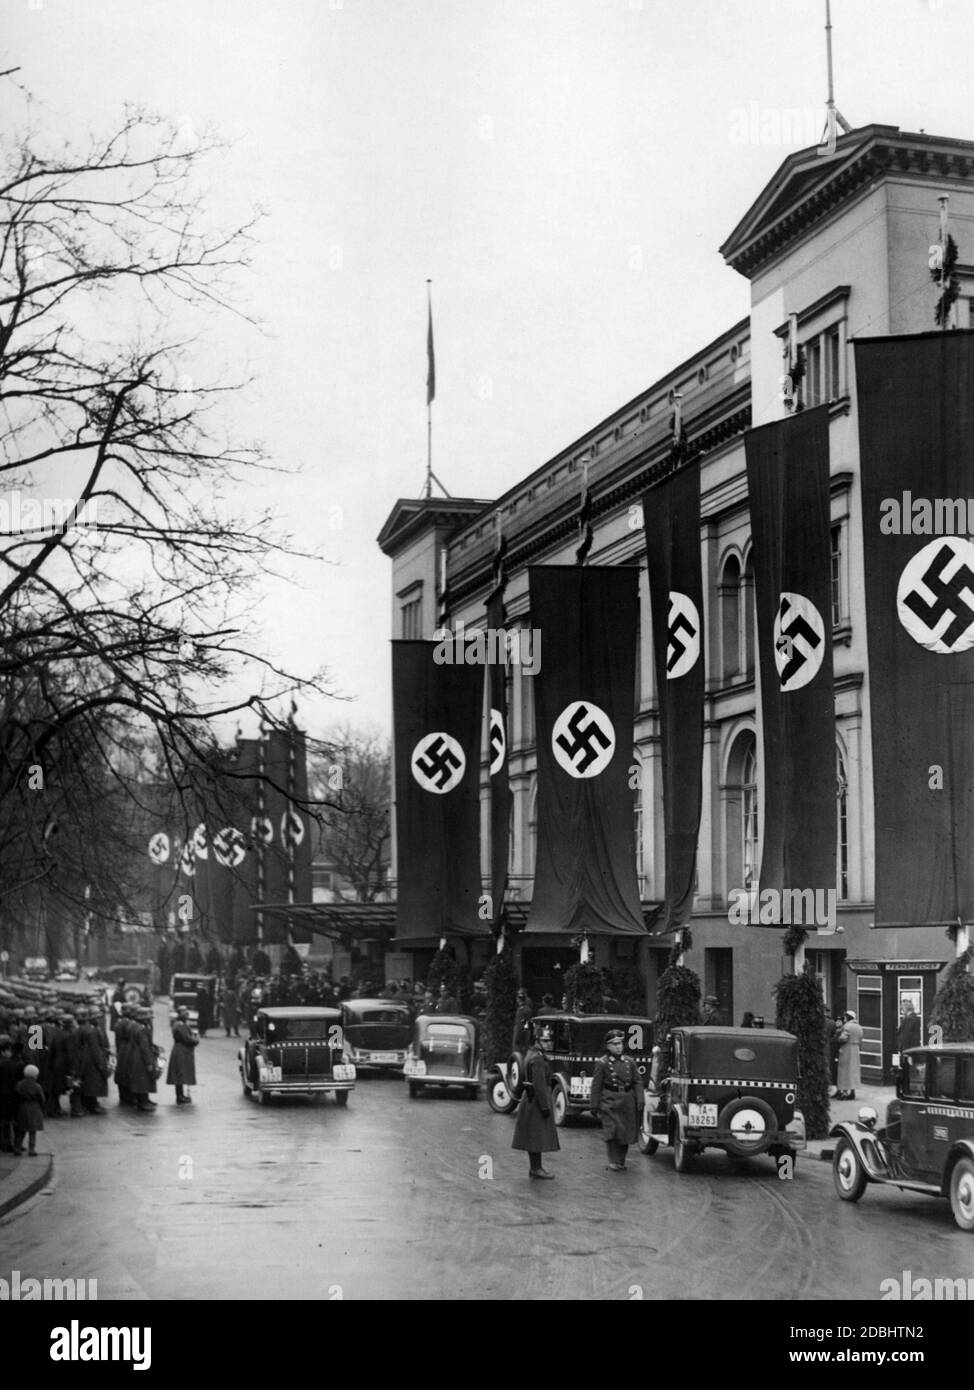 Blick auf das mit Hakenkreuzfahnen geschmückte Gebäude der Kroll-Oper anlässlich der Begrüßung der saarländischen Delegation durch Joseph Goebbels. Auf der linken Seite sind Soldaten der Wehrmacht, auf der rechten Seite sind mehrere Taxis. Stockfoto